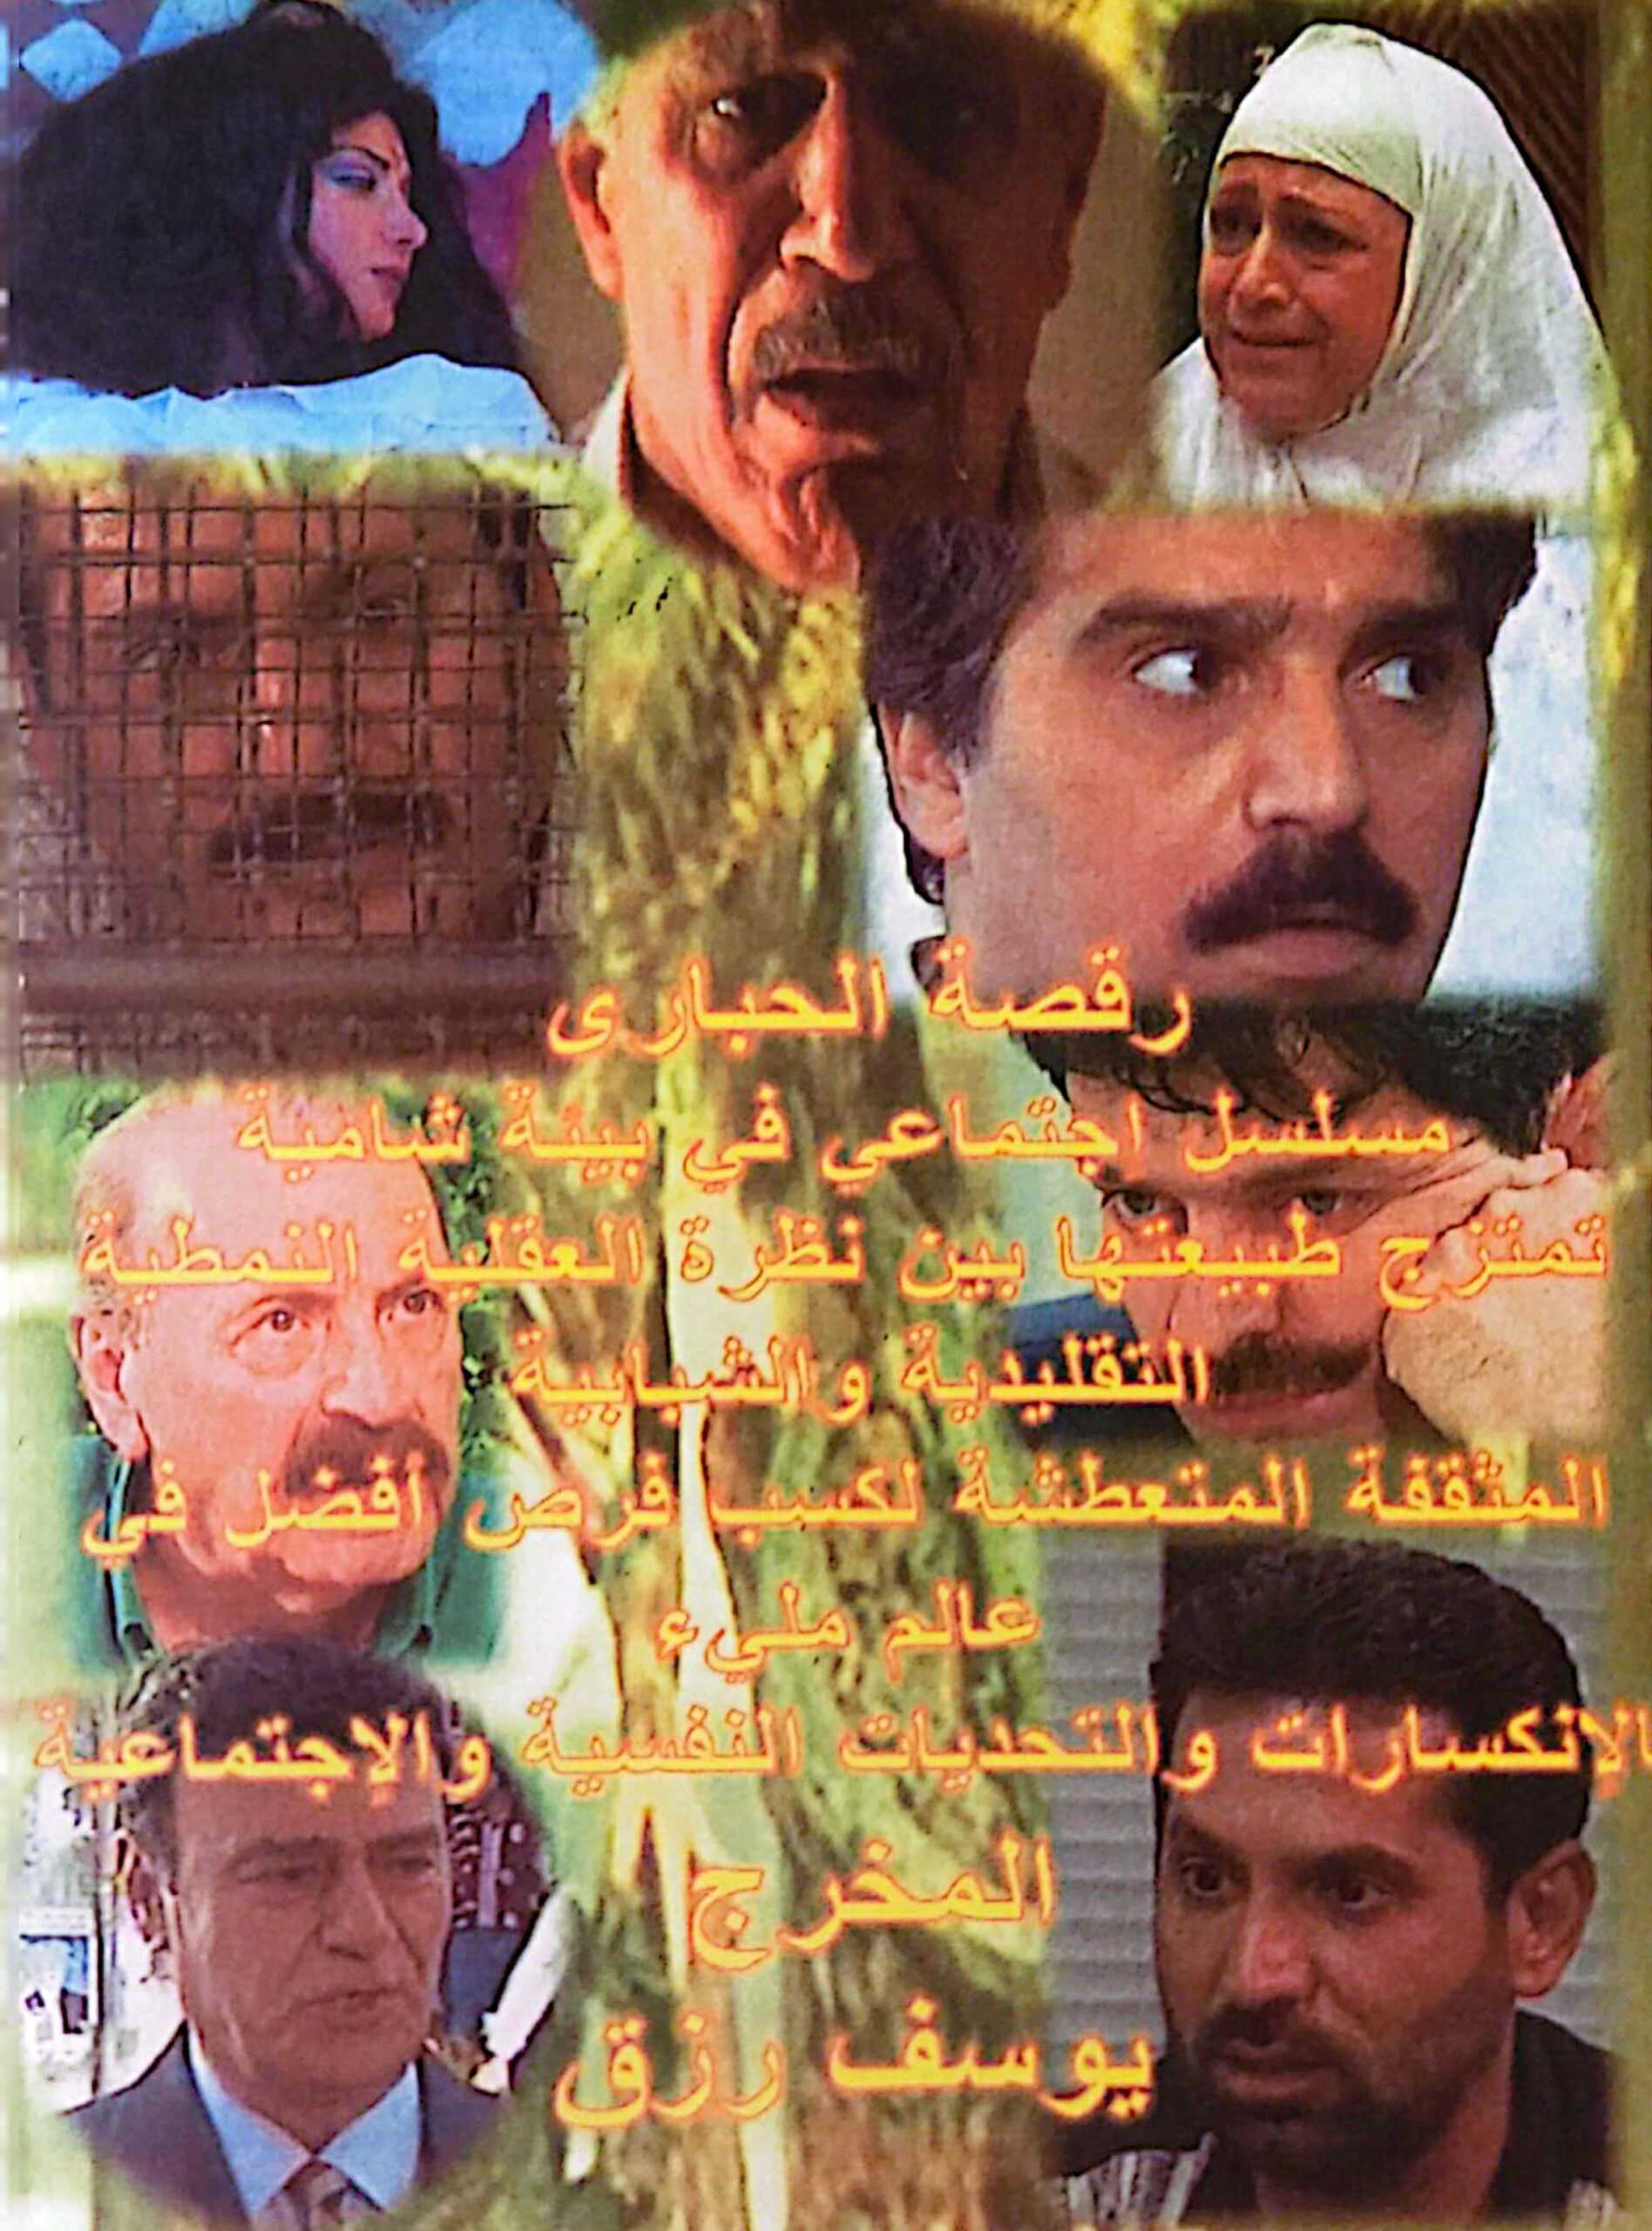 التاريخ السوري المعاصر - مسلسل رقصة الحبارى 1999